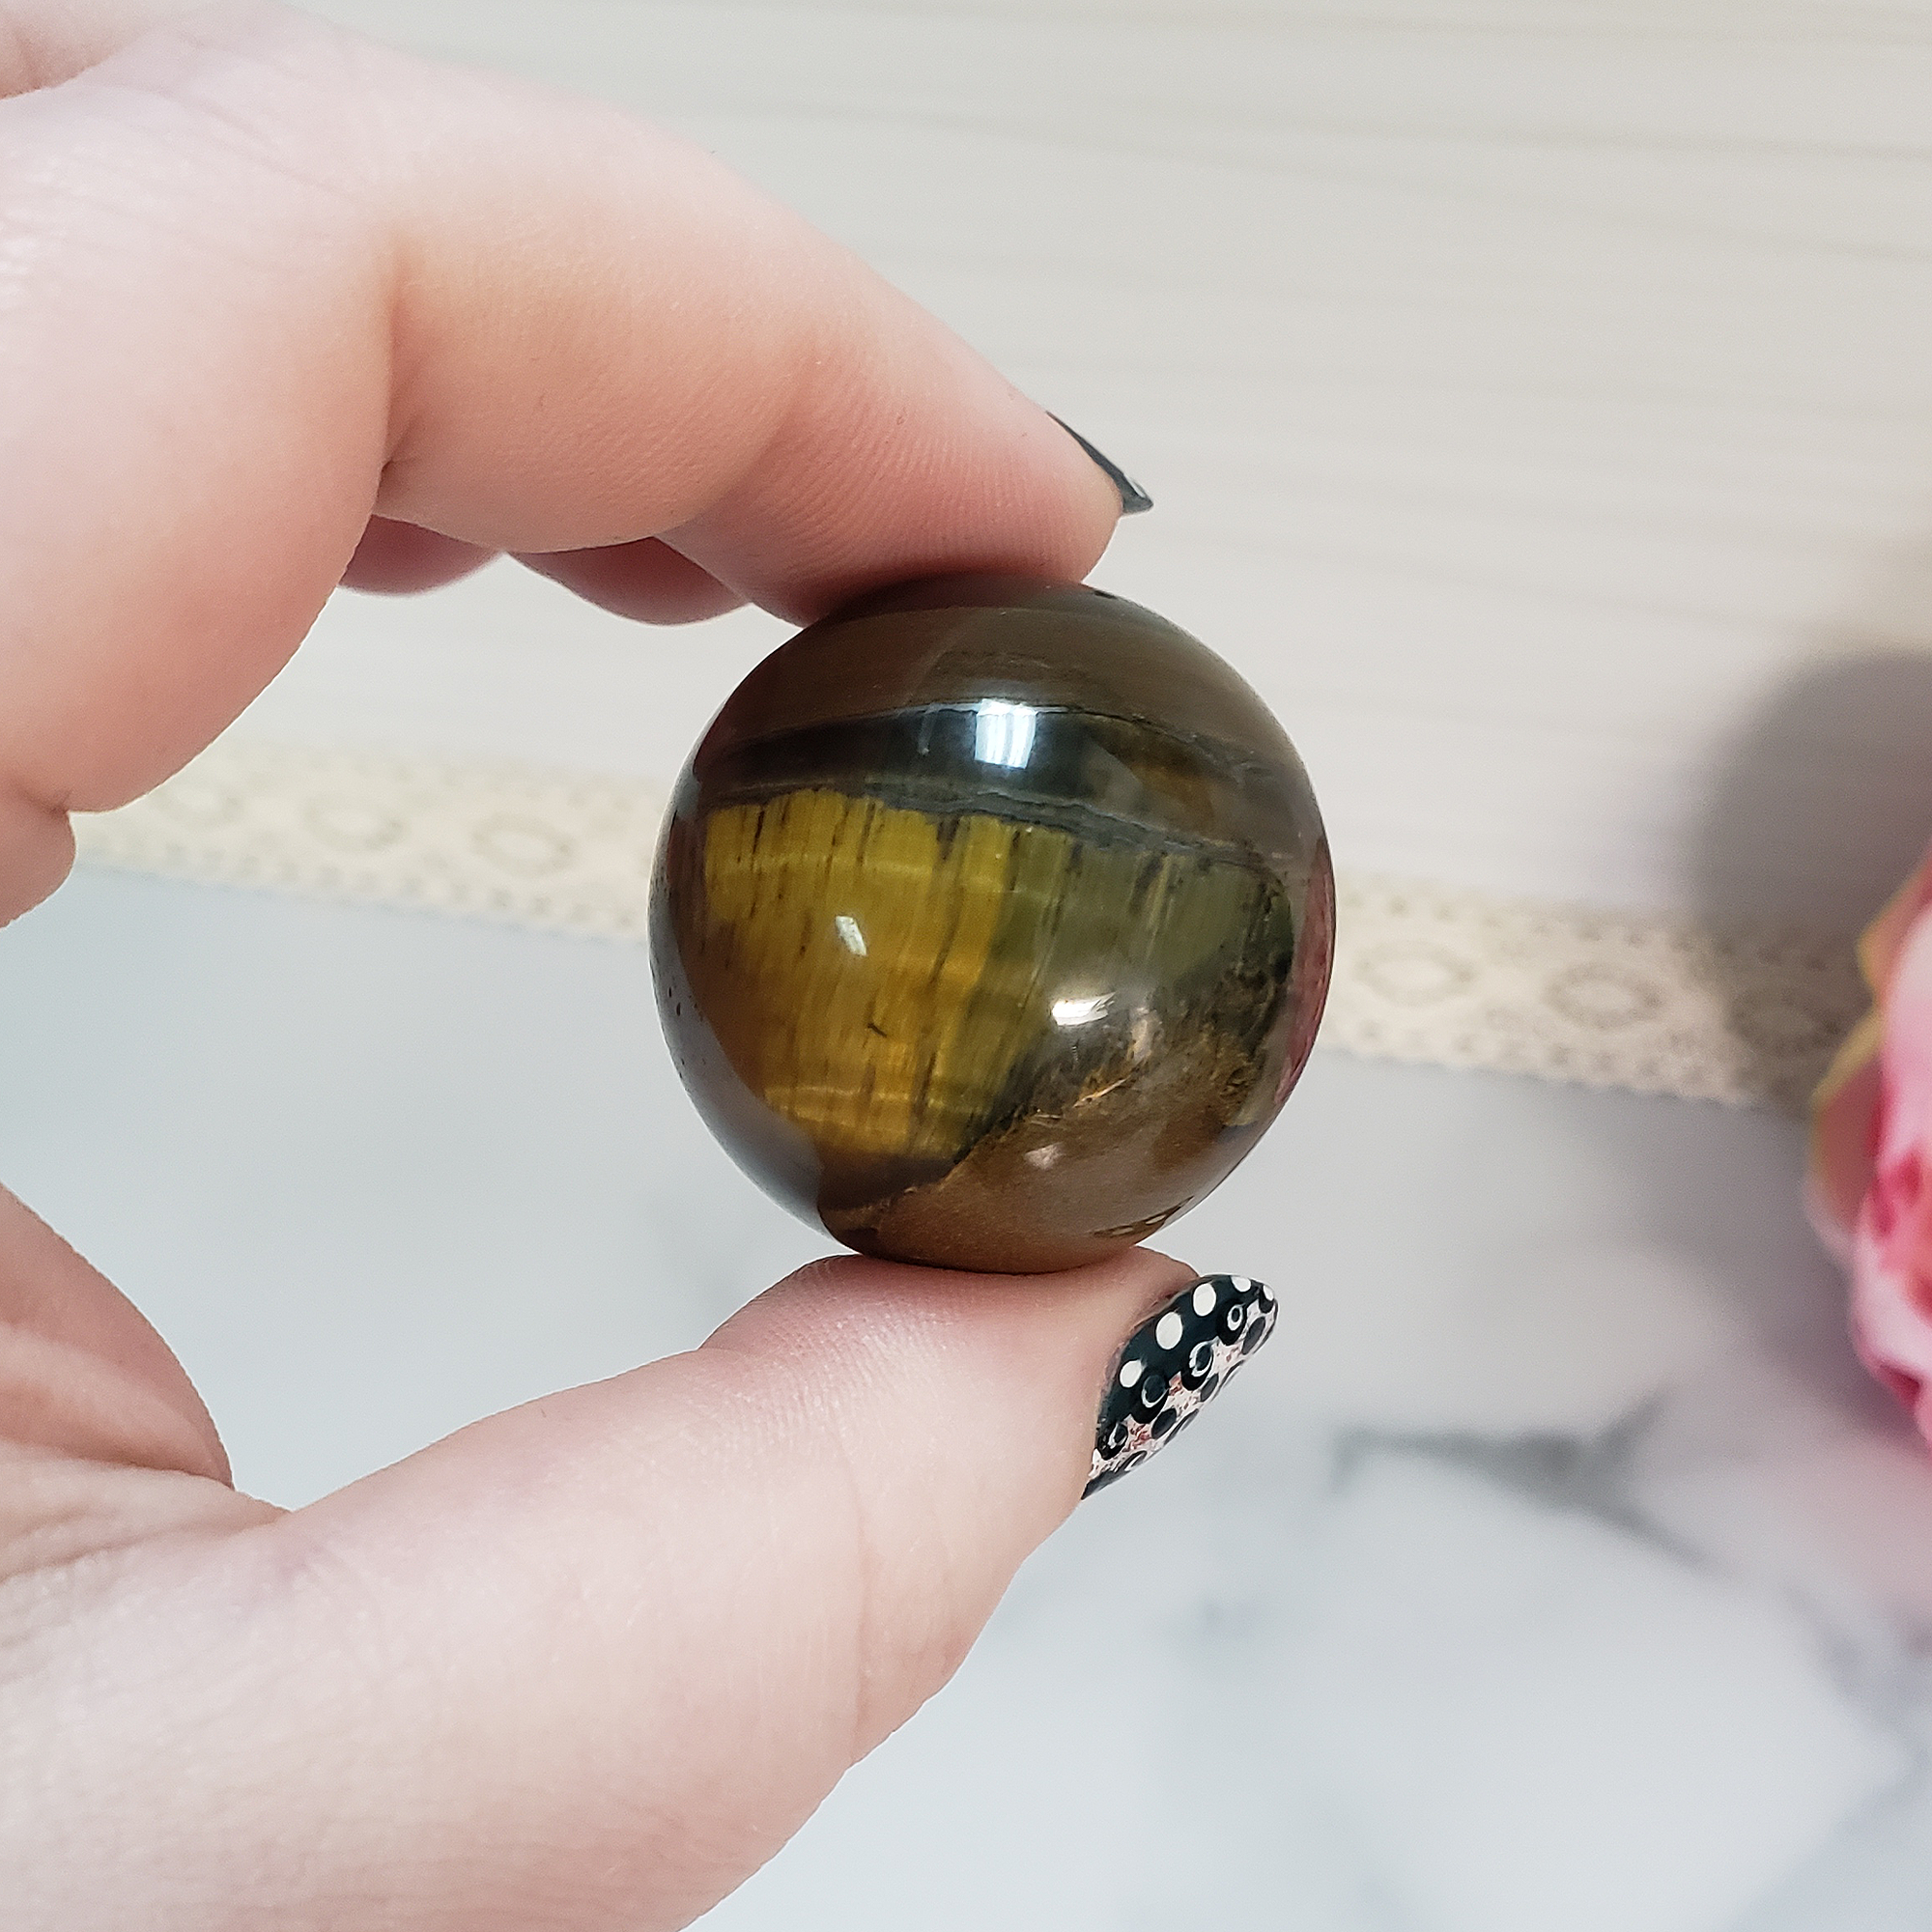 Tigers Eye Natural Crystal Sphere Gemstone Orb - One 30mm Sphere - One Tiger Eye Sphere Between Finger and Thumb